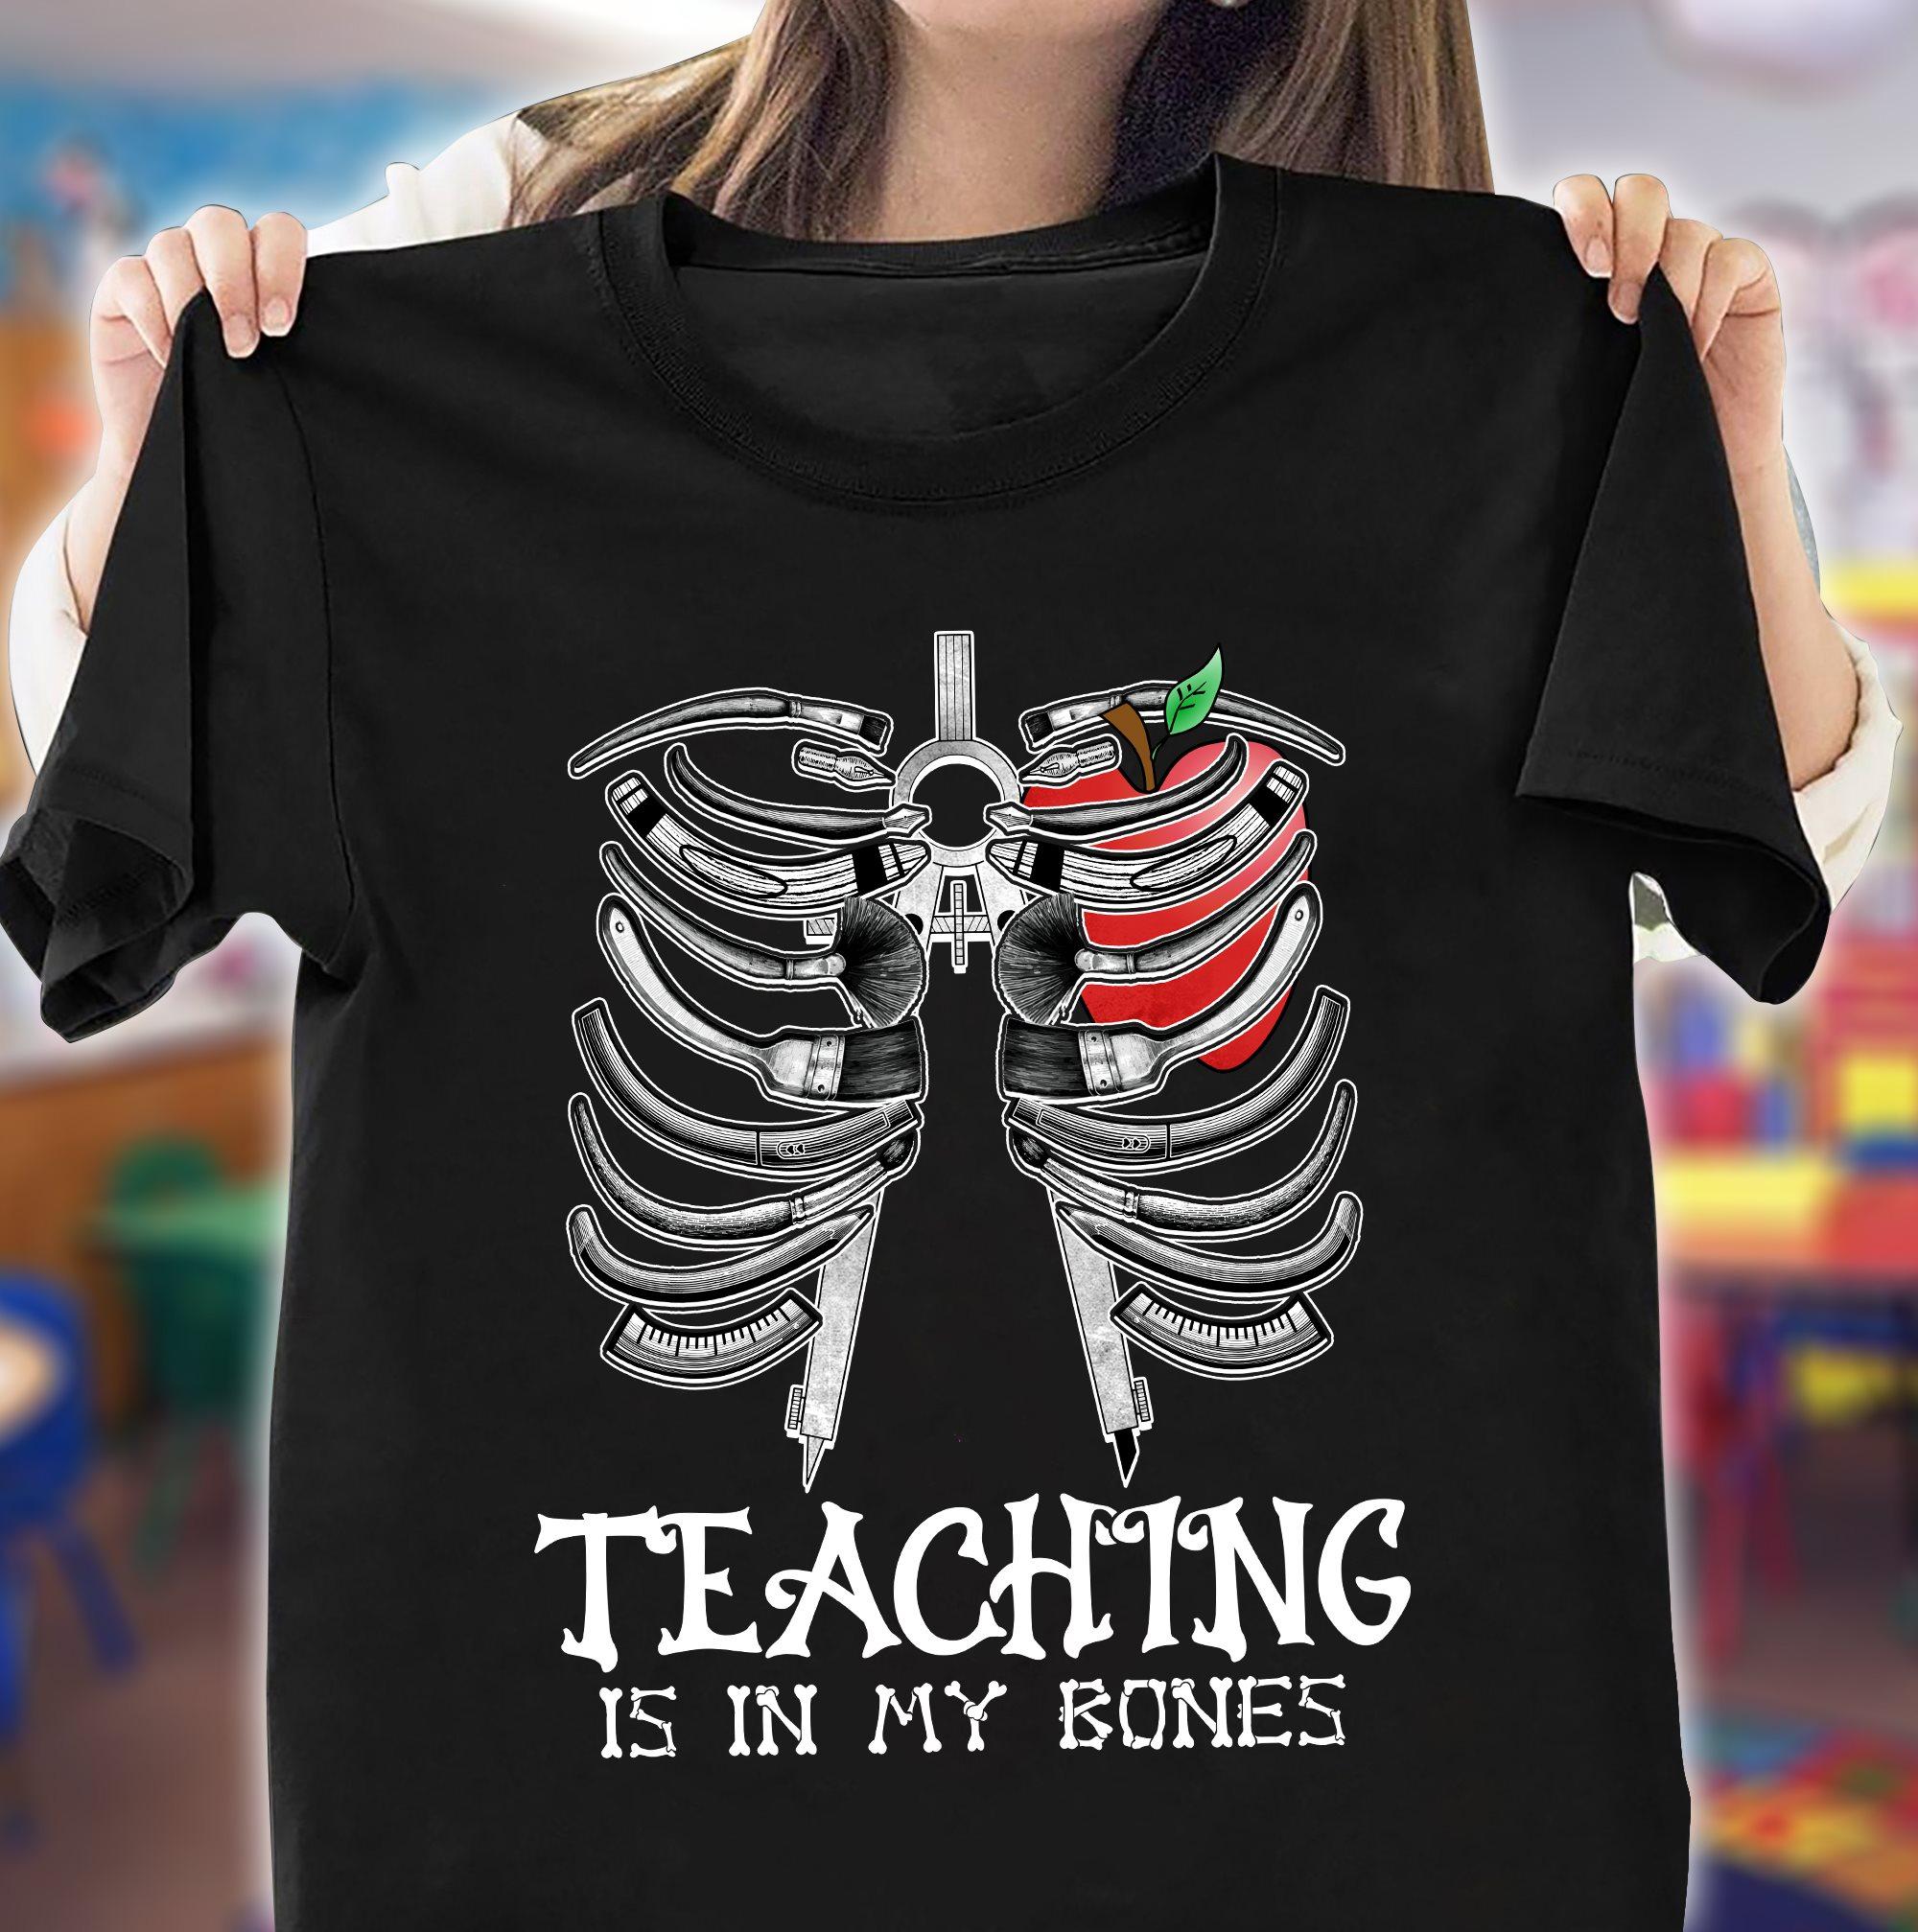 Teaching is in my bones - Teacher the educational job, skull of teacher